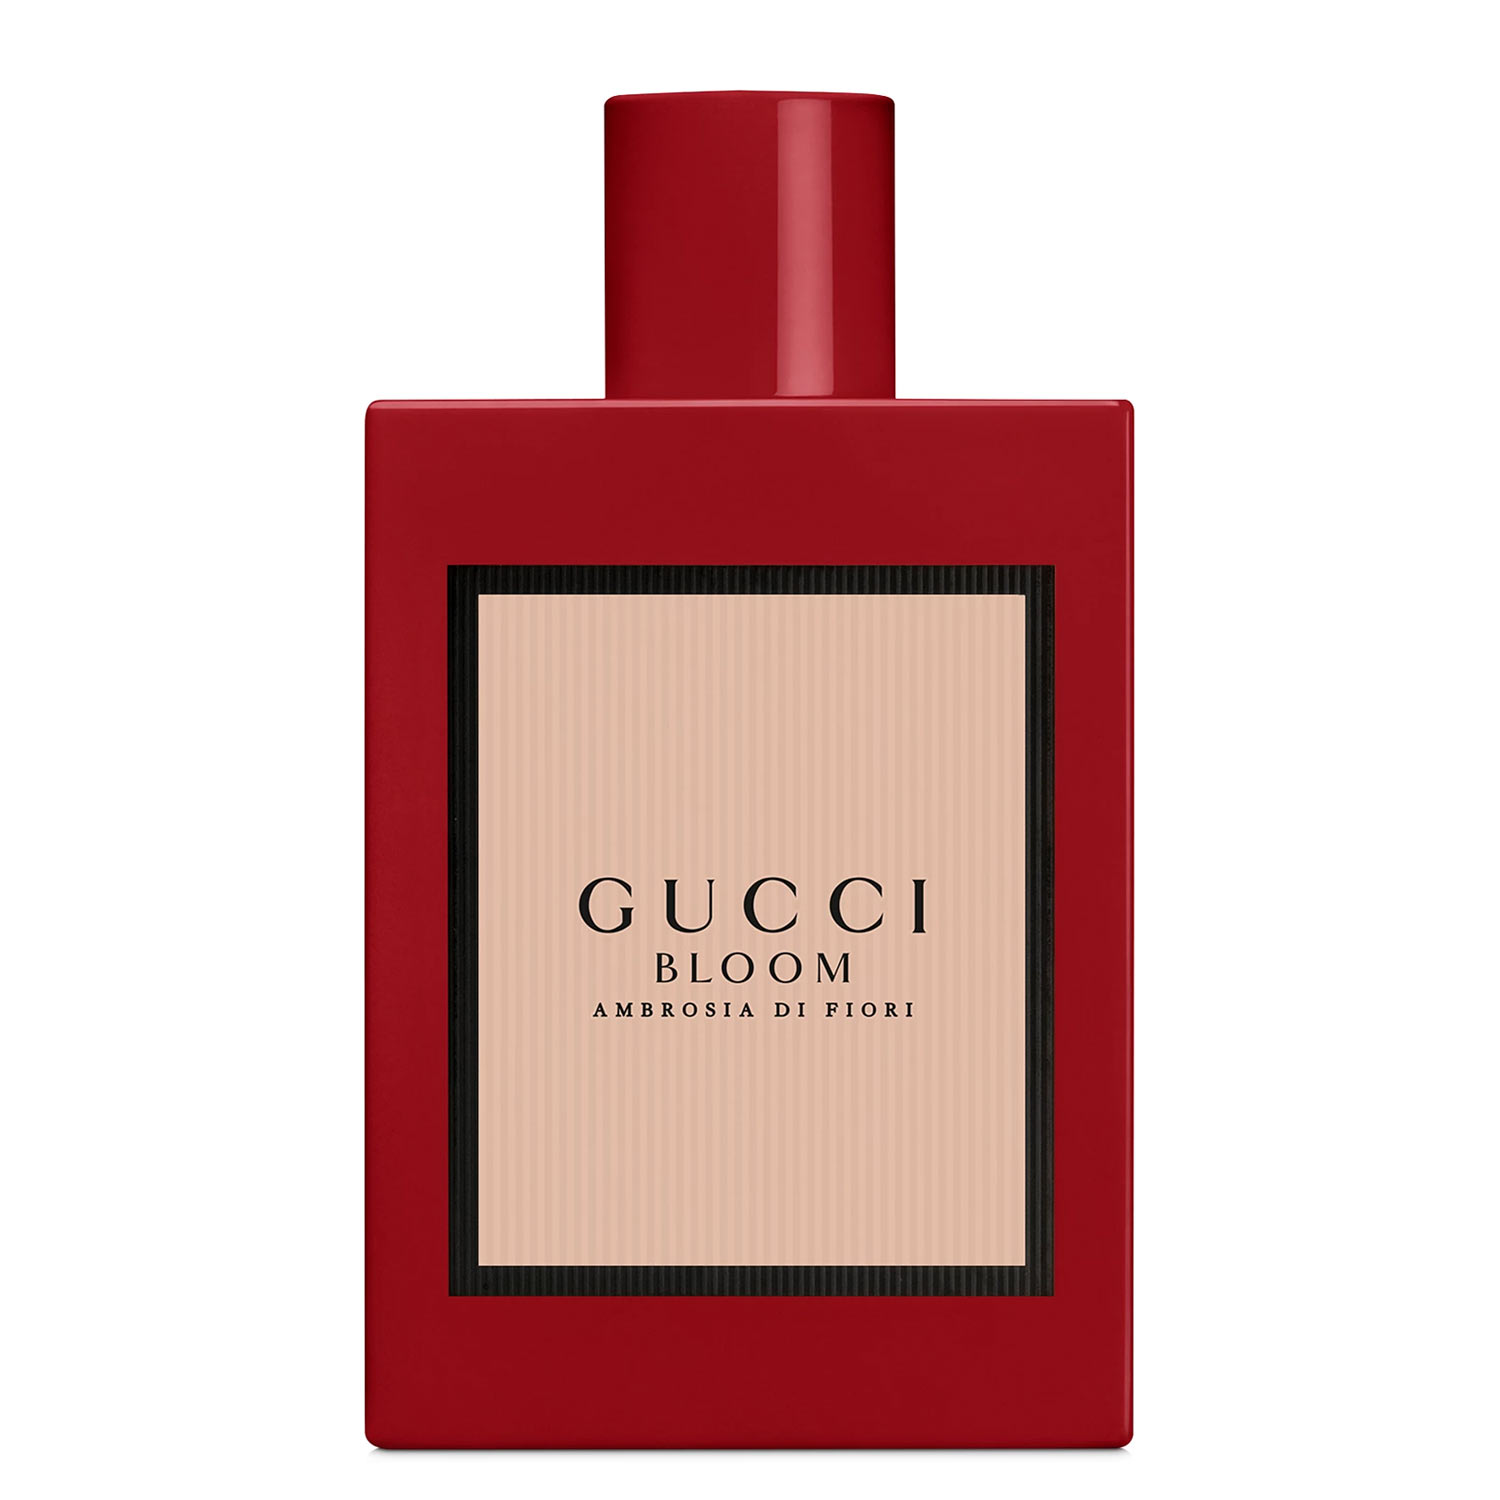 Gucci-Bloom-Ambrosia-Di-Fiori-Gucci